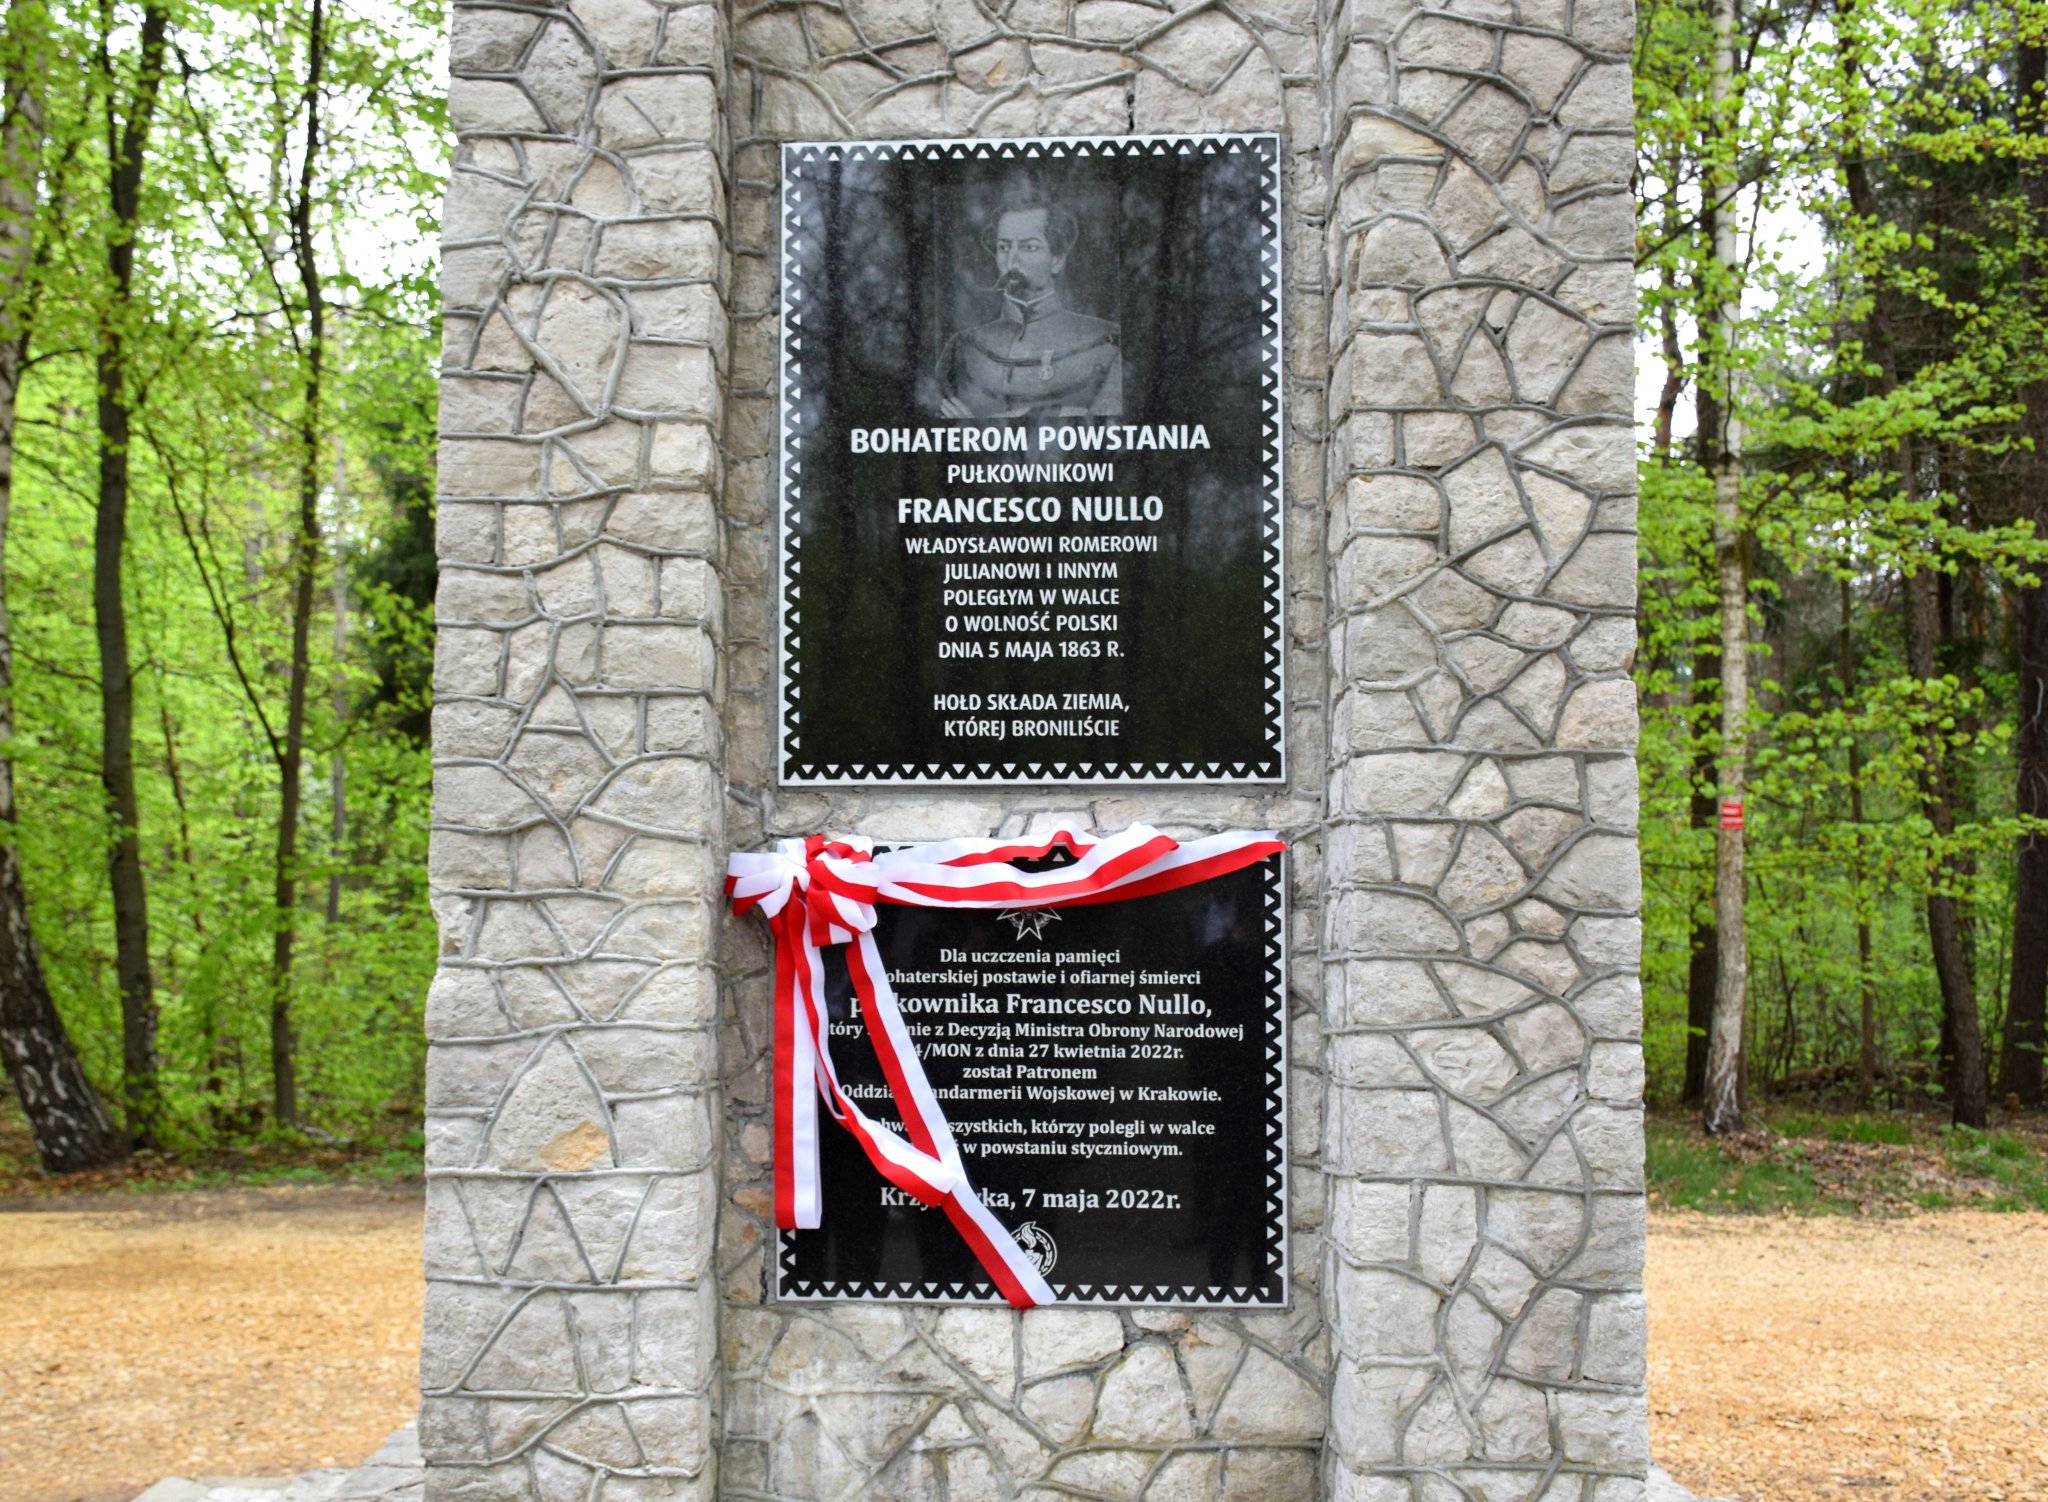 Pomnik ku czci bohaterów Powstania i pułkownika Francesco Nullo w Krzykawie